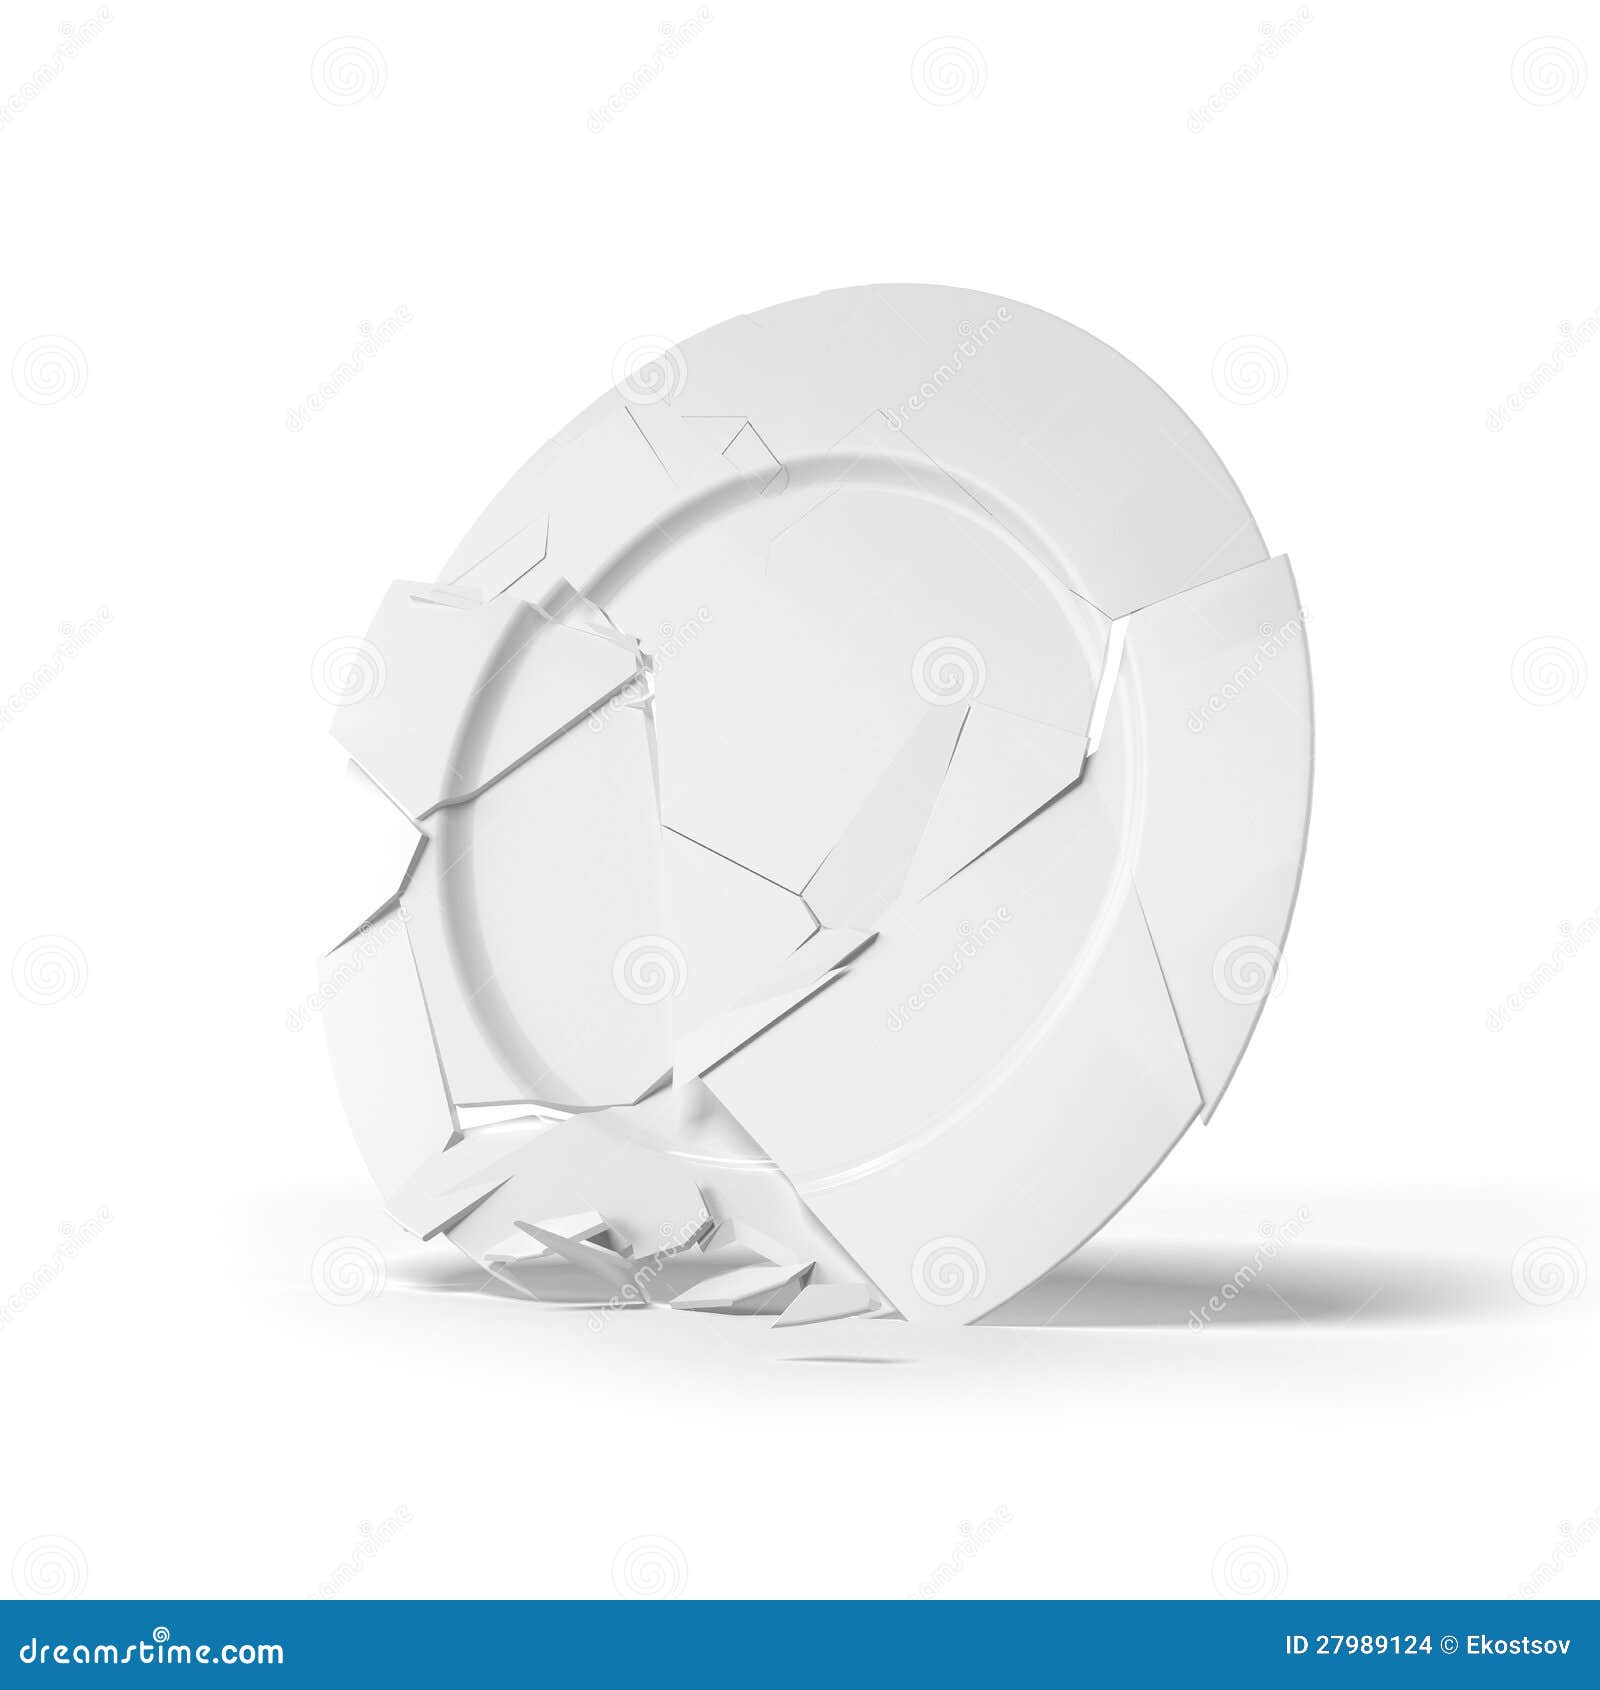 broken white plate